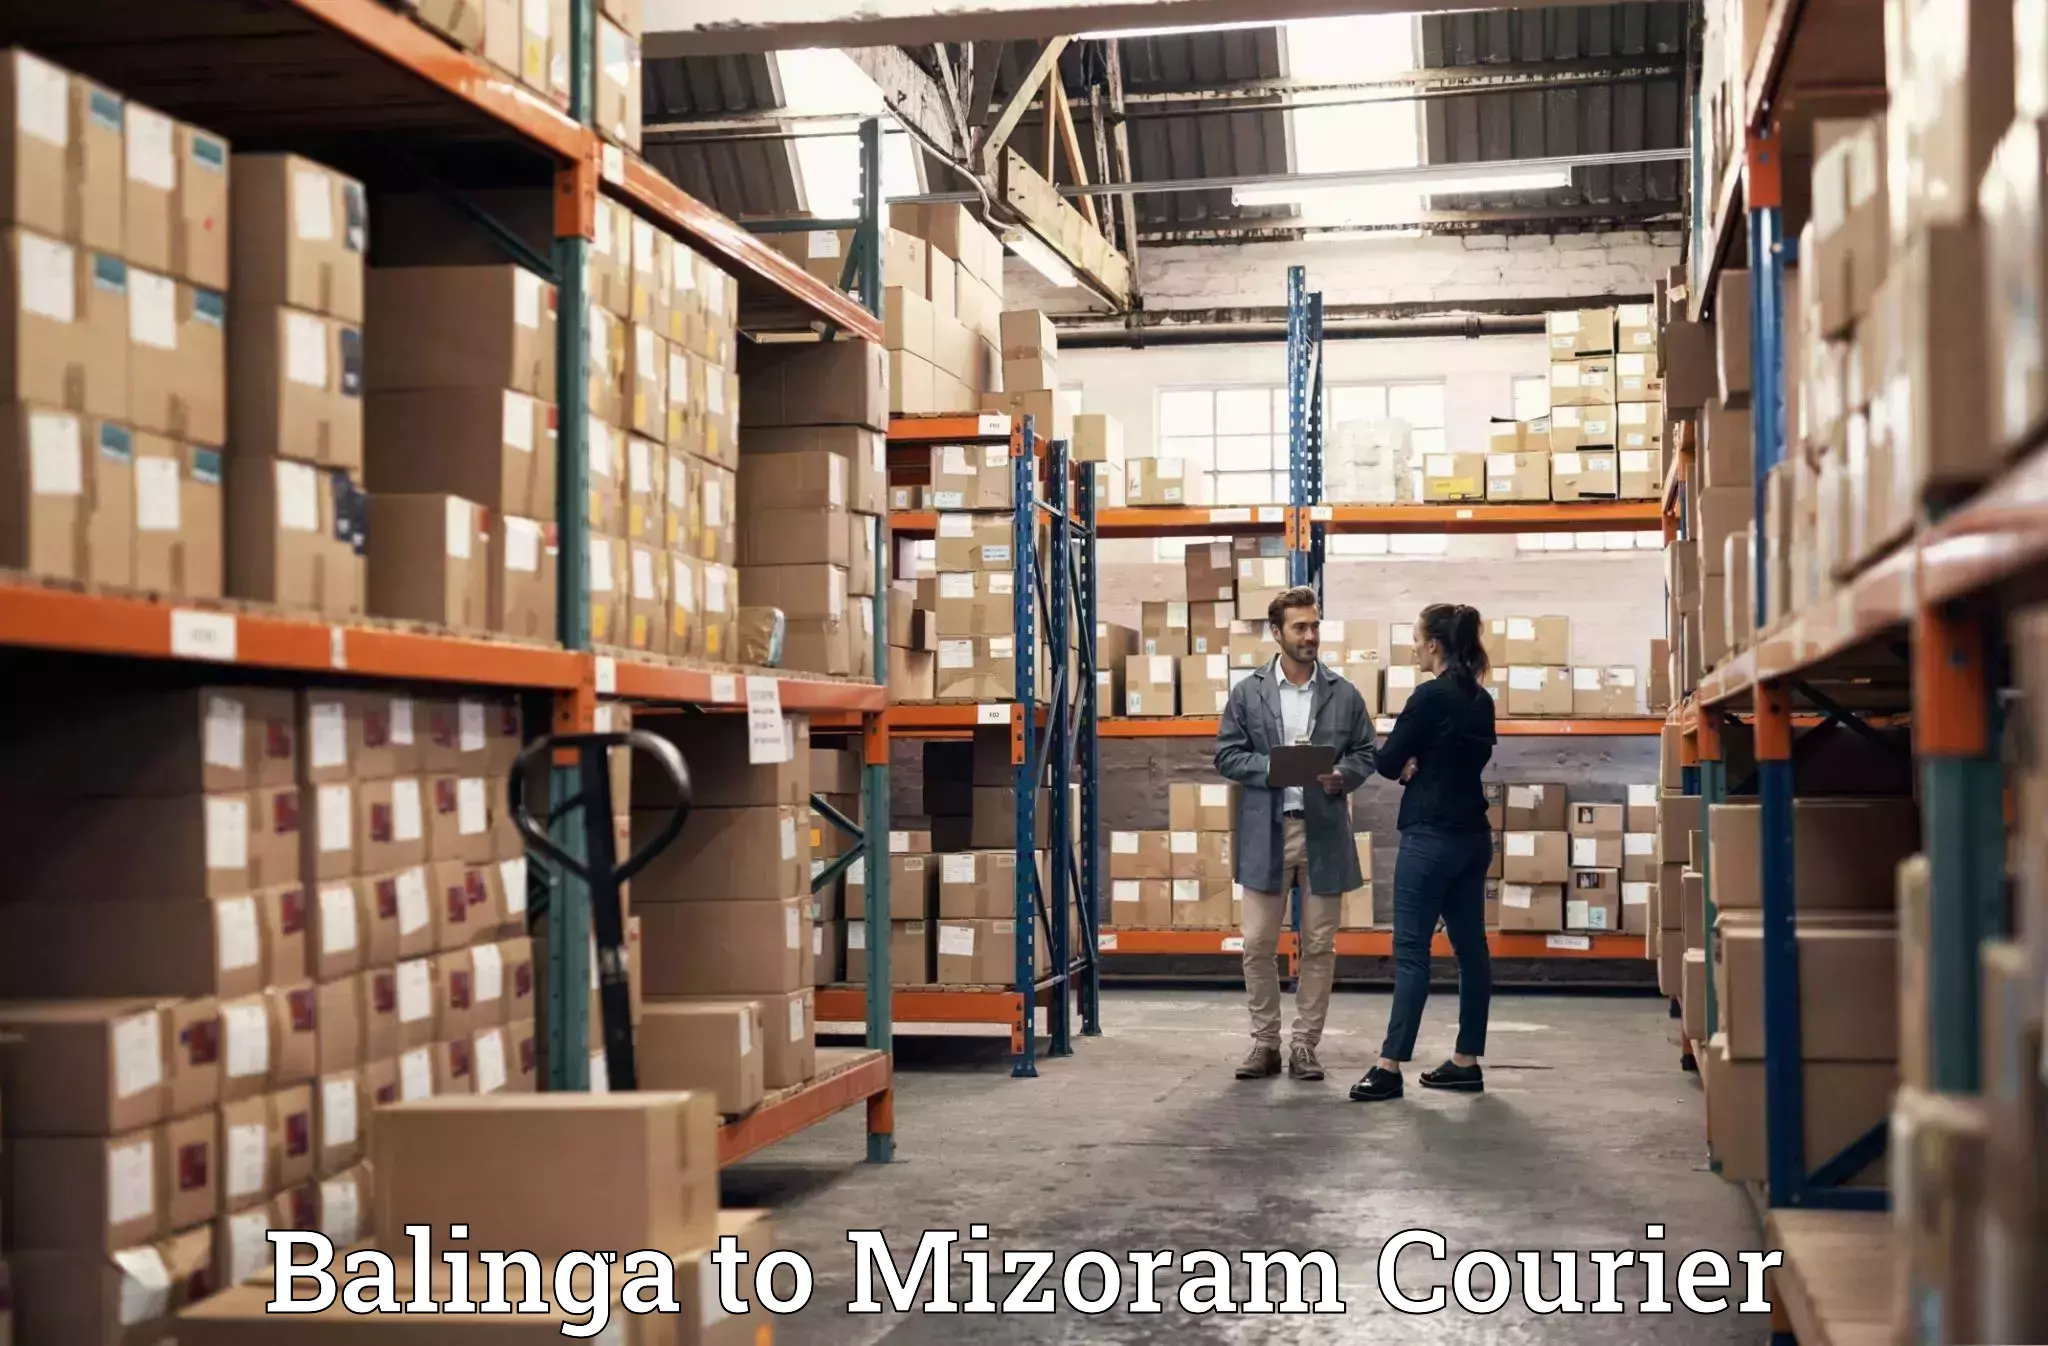 Furniture transport professionals Balinga to Mizoram